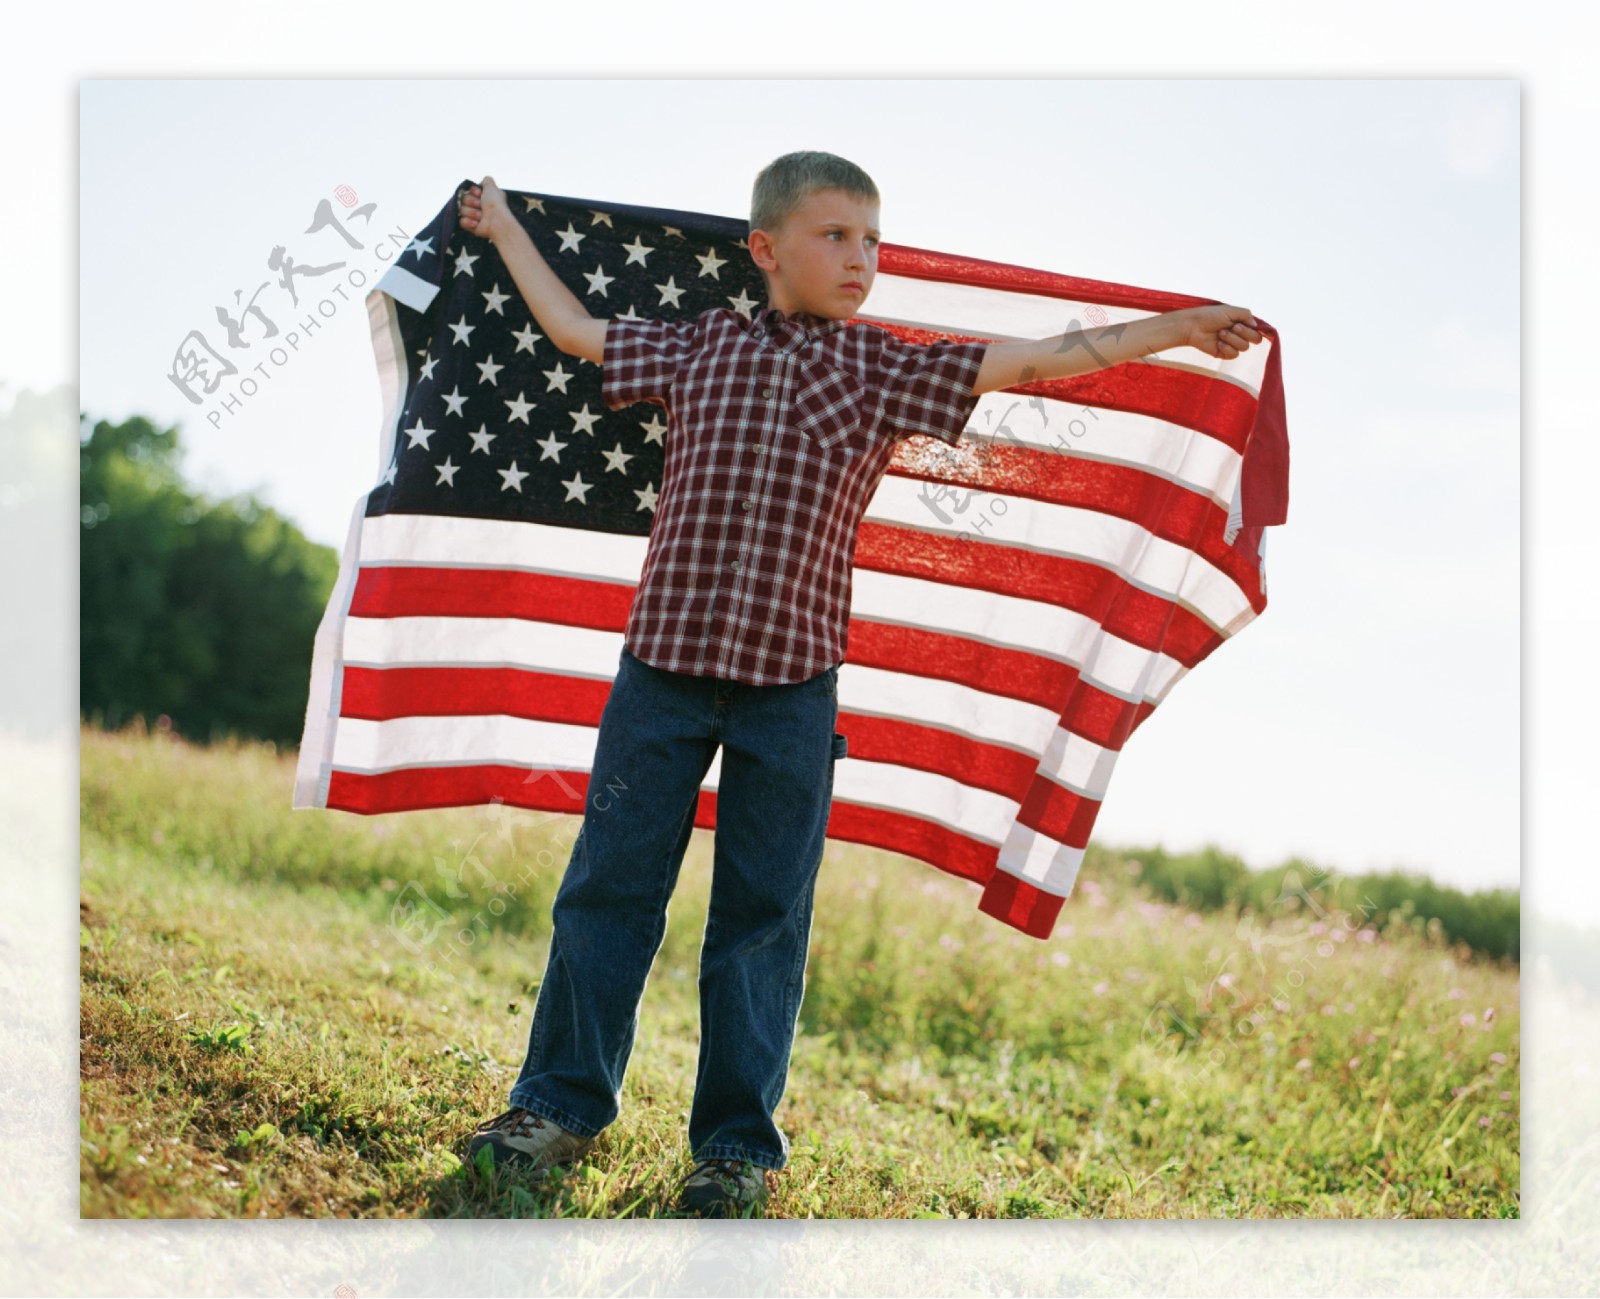 披着国旗的男孩图片